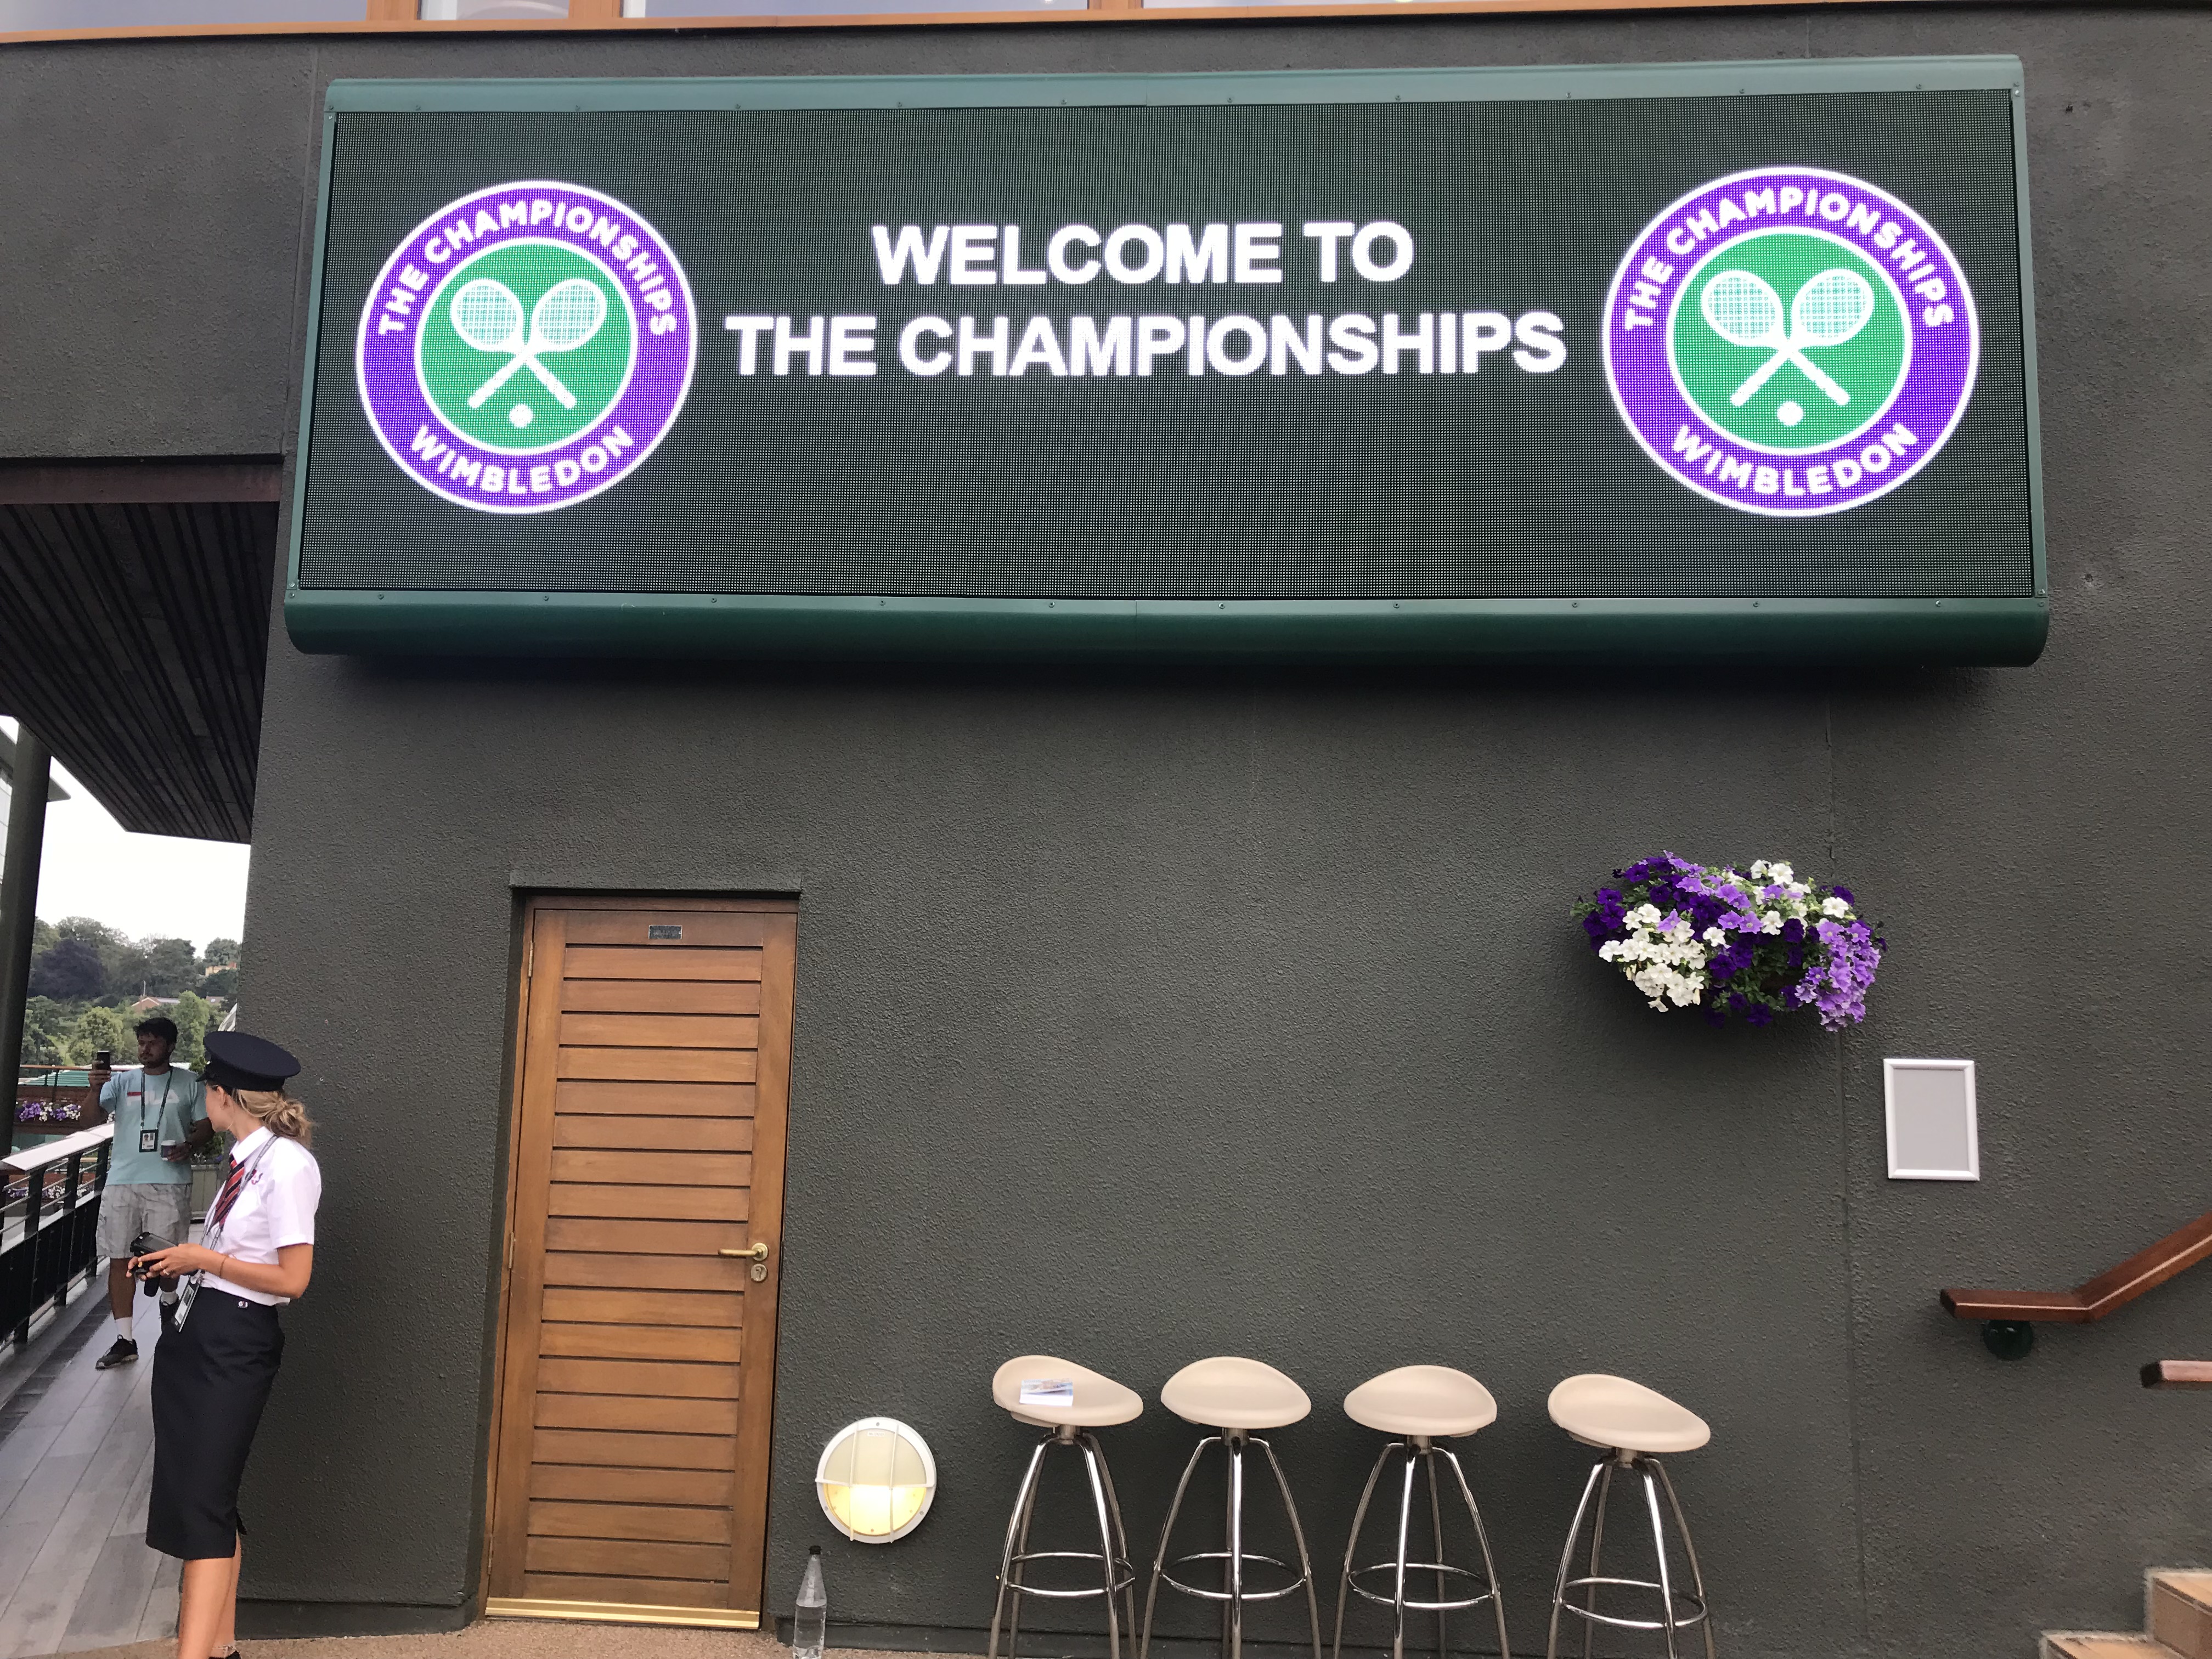 Wimbledon Announces 11.8% Prize Money Increase for 2019 